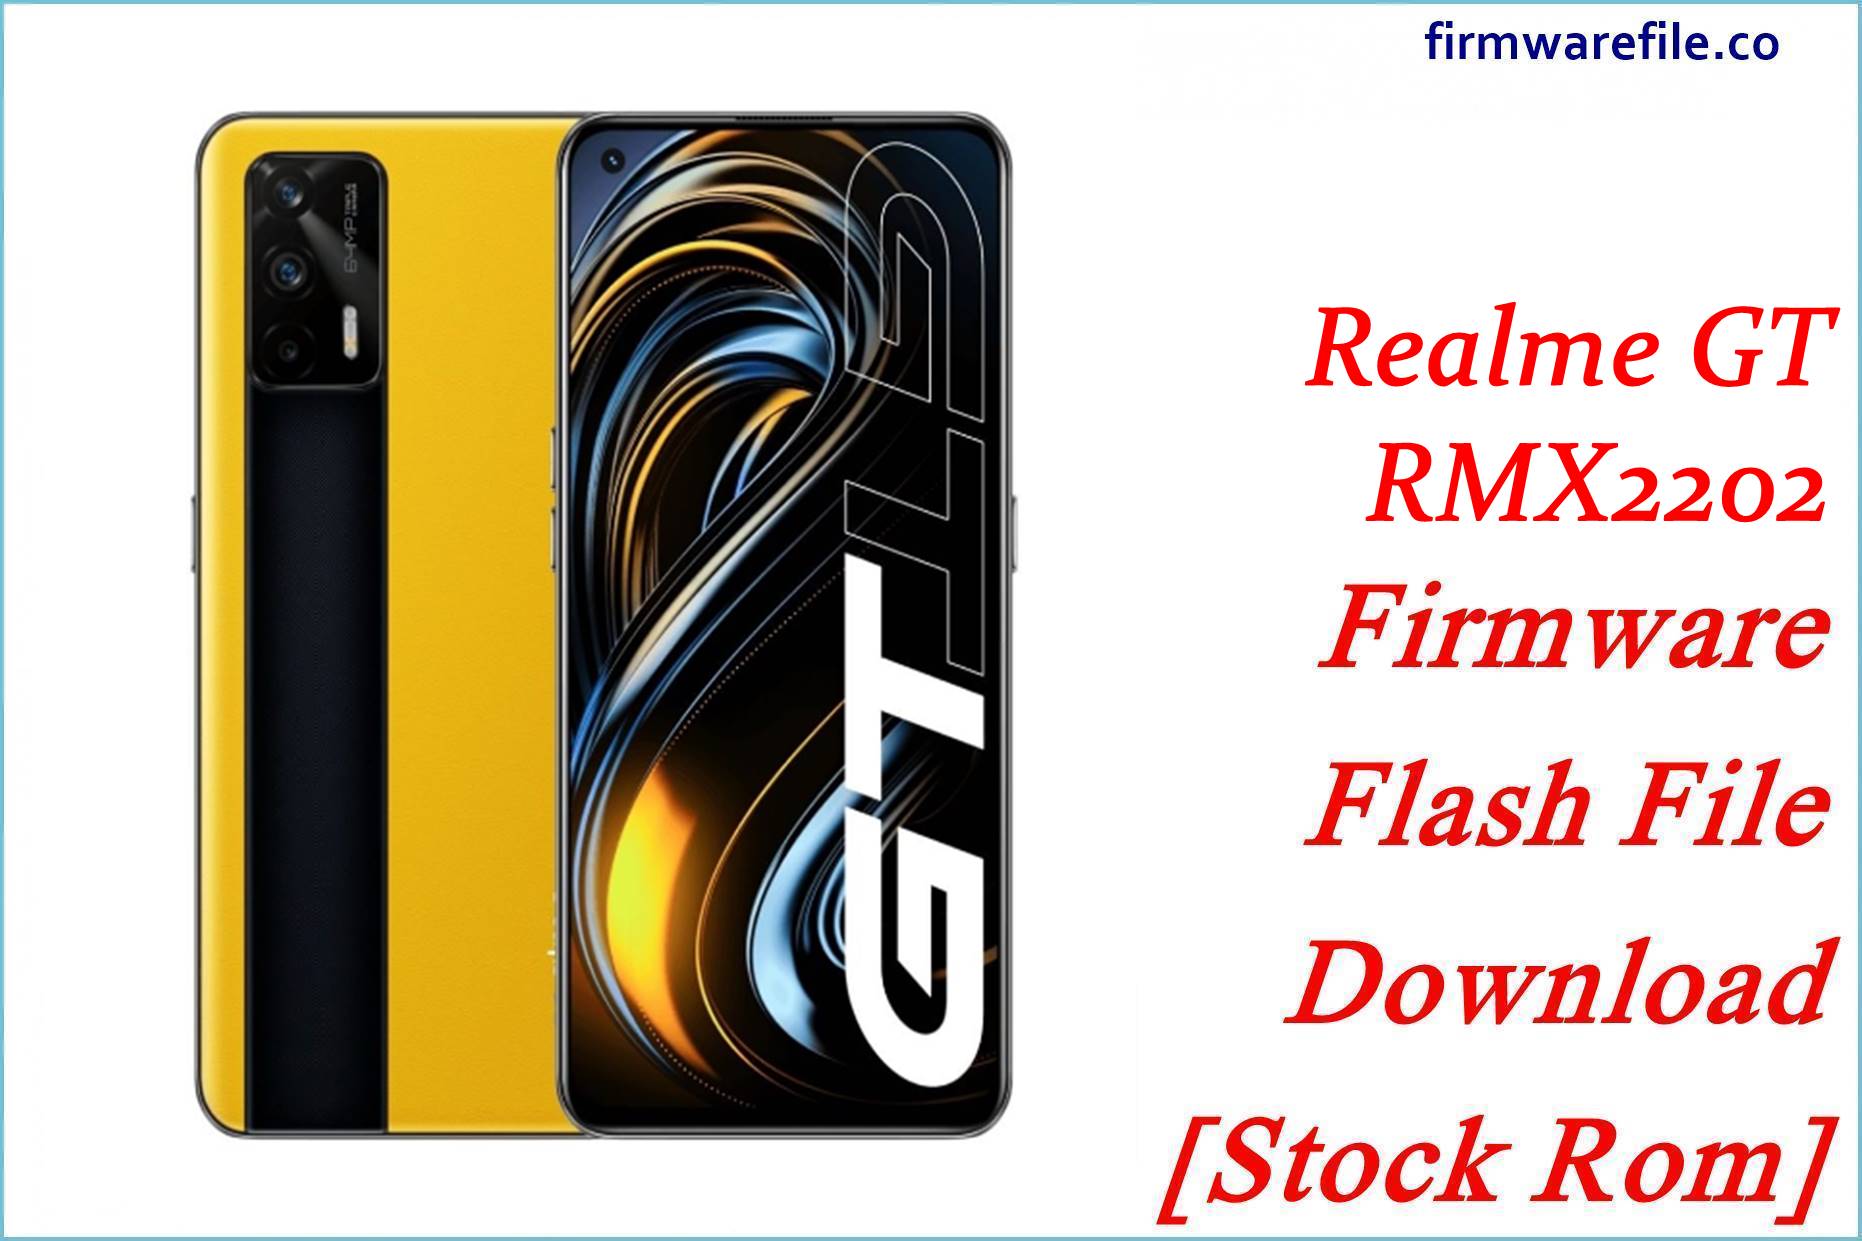 Realme GT RMX2202